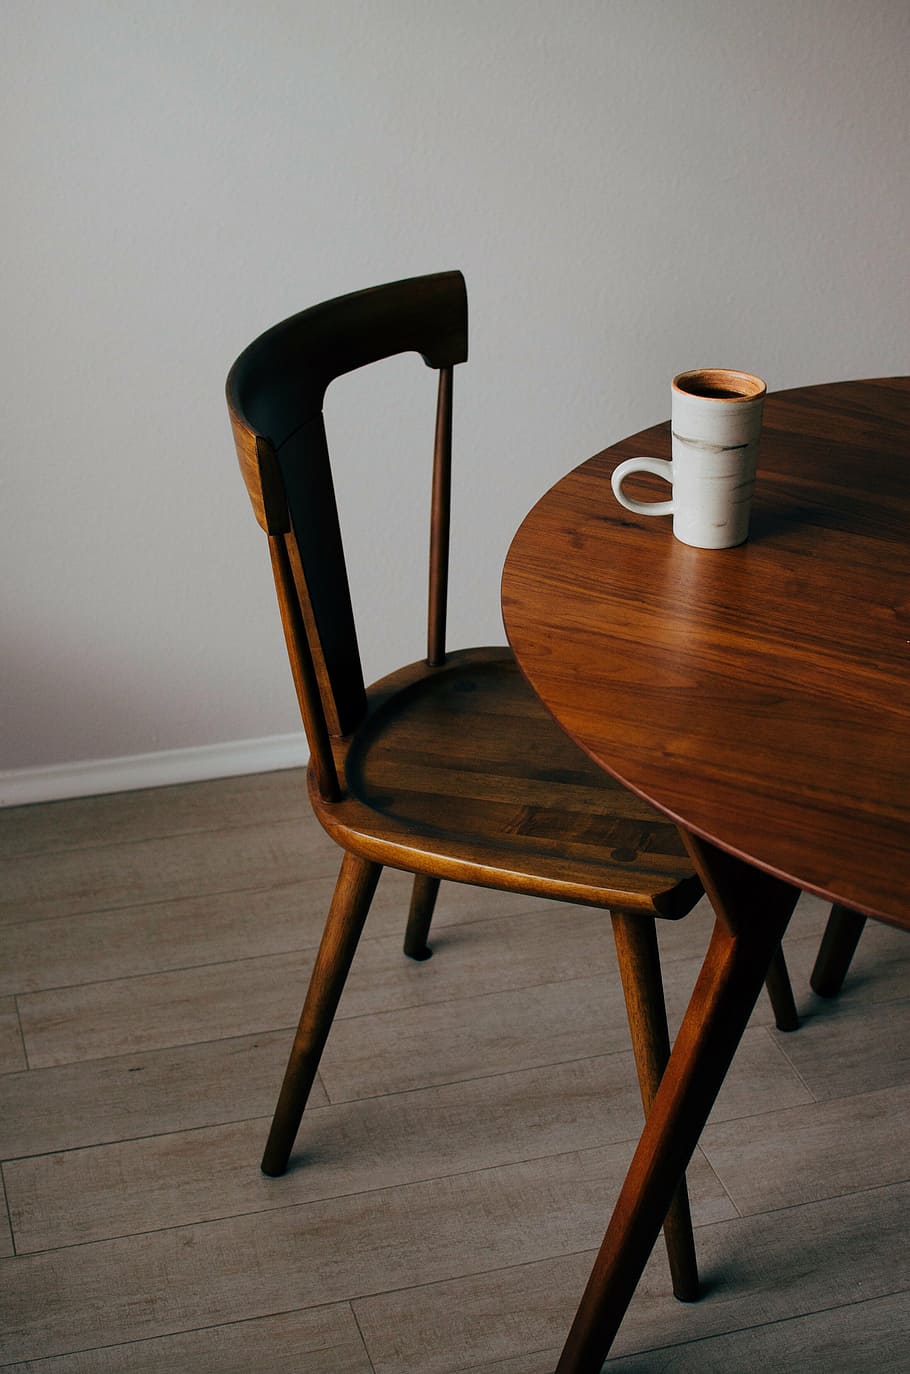 marrón, madera, silla, al lado, blanco, cerámica, taza de café, mesa, taza, café